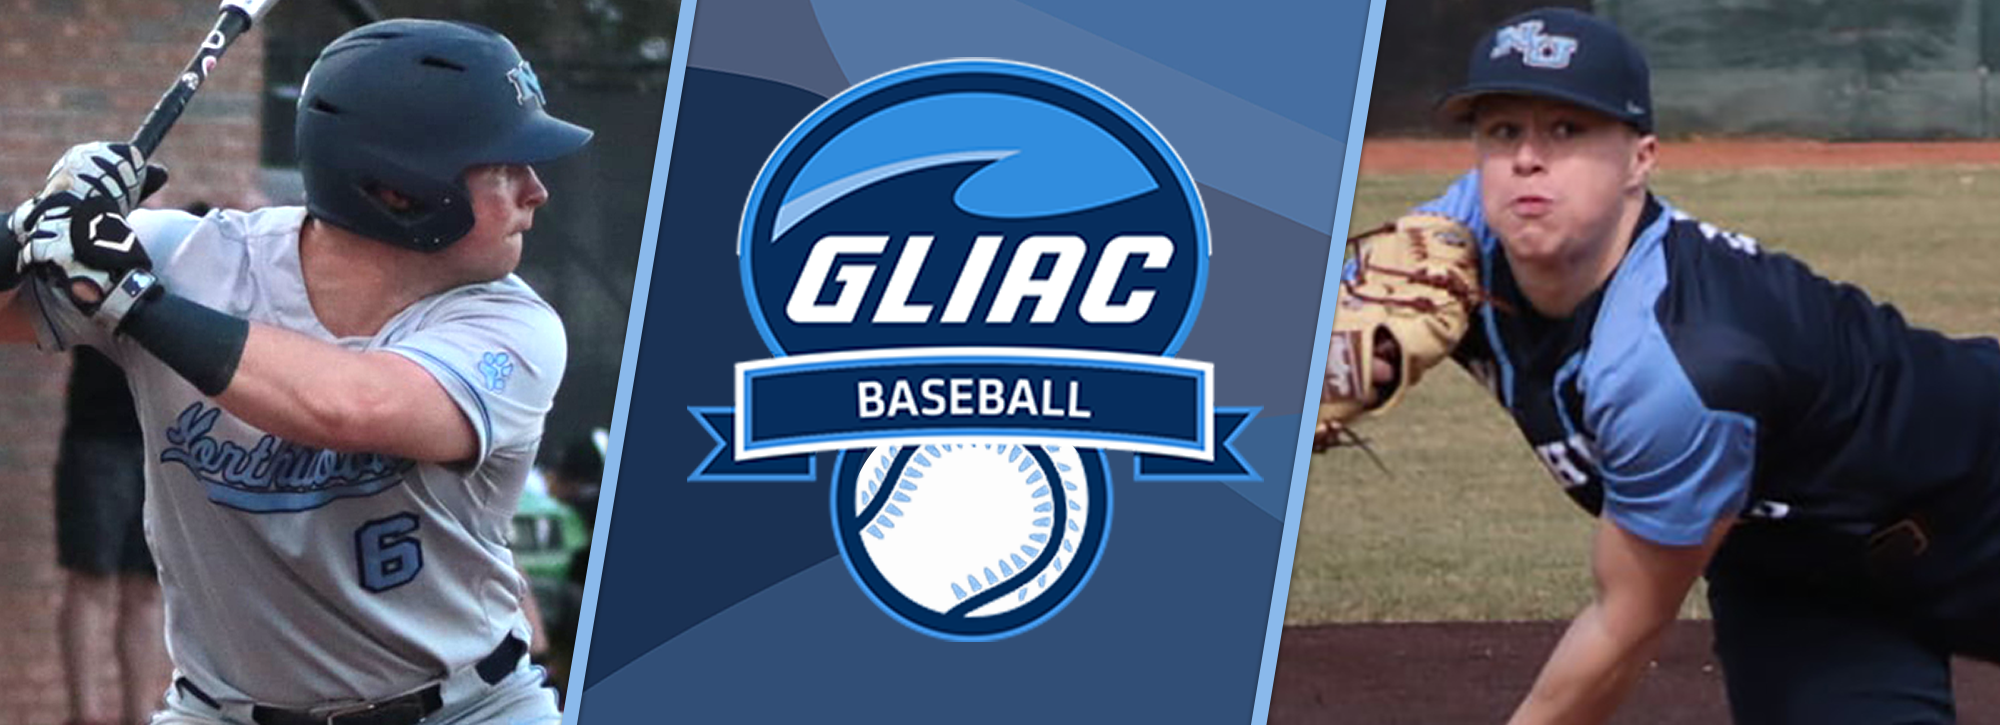 NU's Showers and Clark earn GLIAC baseball weekly honors